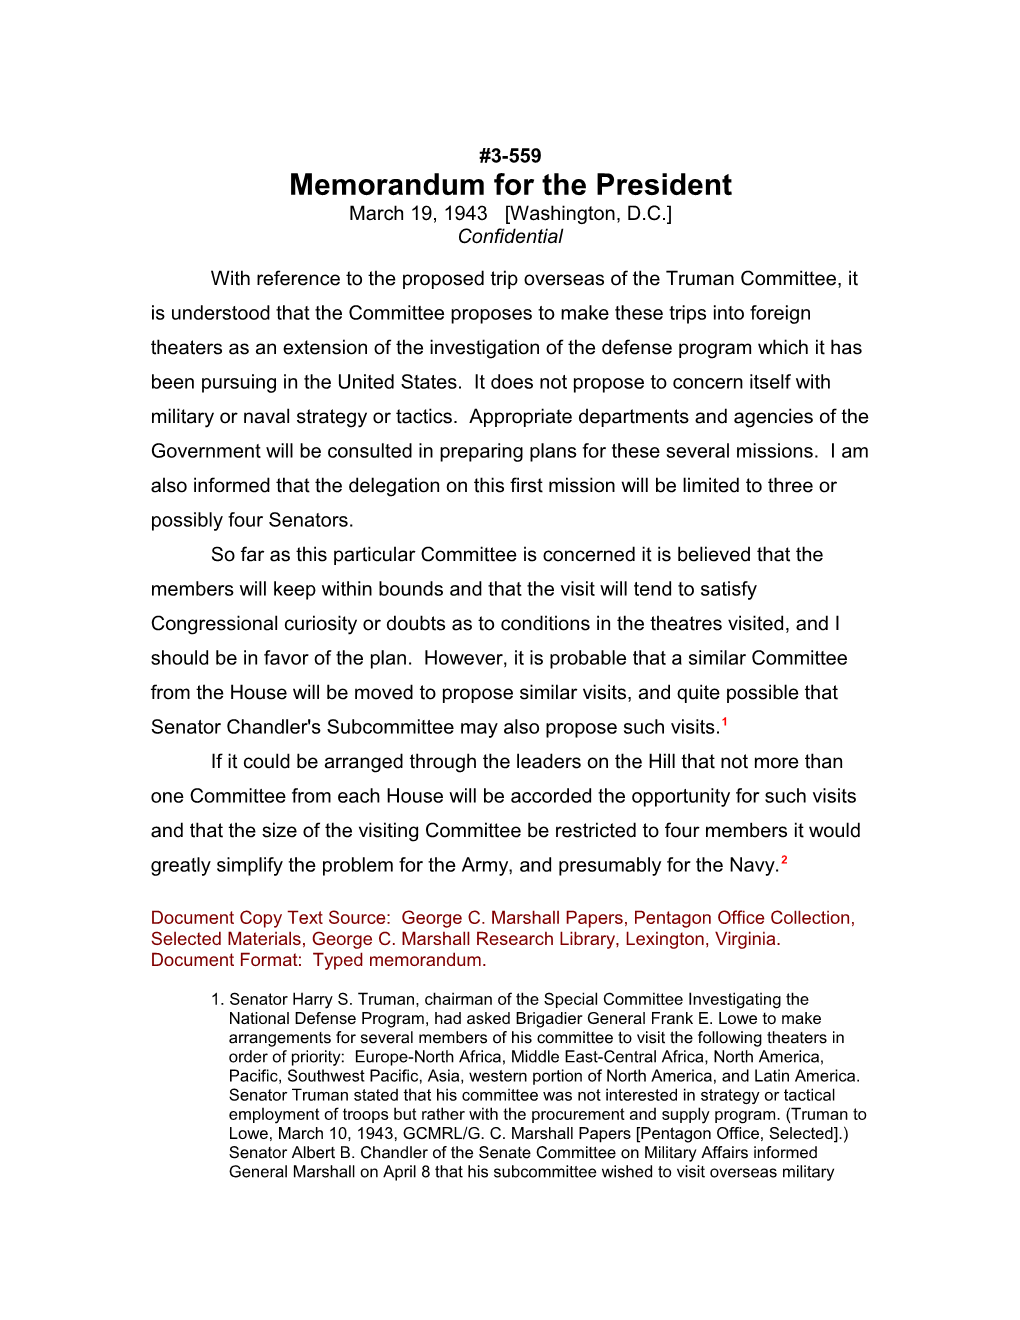 Memorandum for the President